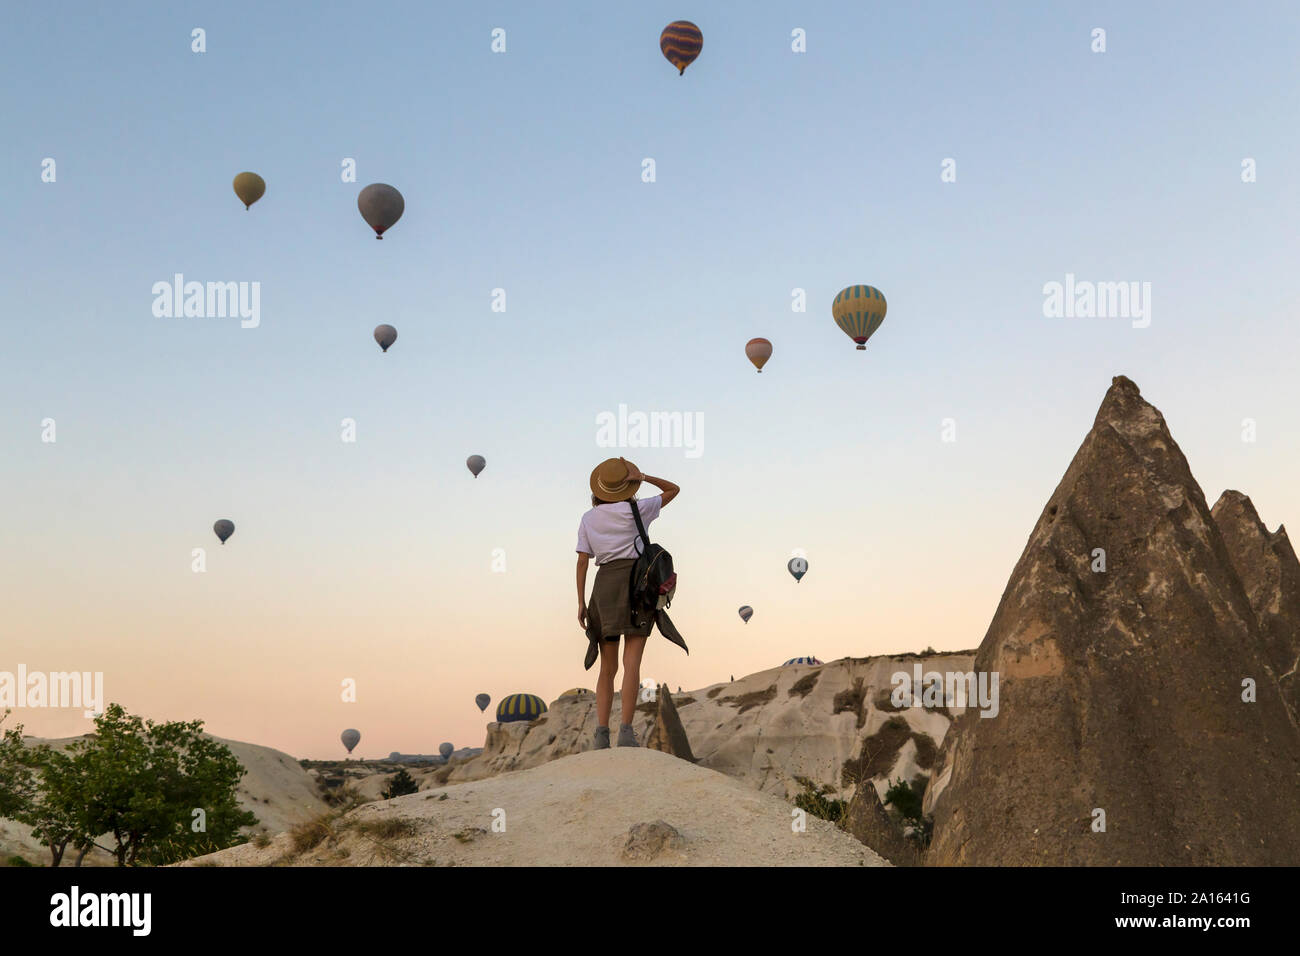 Giovane donna e aria calda ballons, Goreme, Cappadocia, Turchia Foto Stock